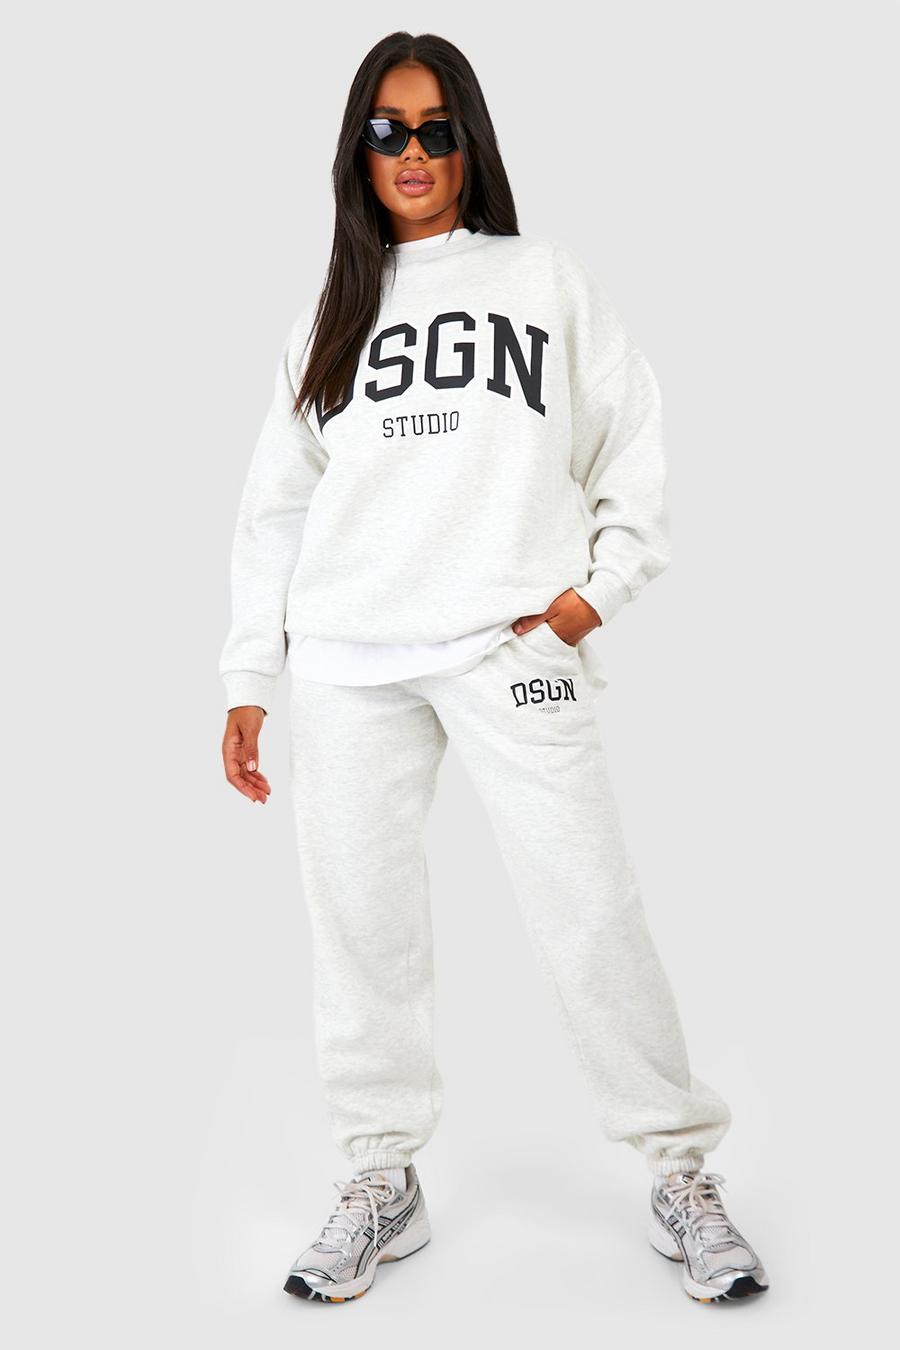 Pantalón deportivo oversize con eslogan Dsgn Studio, Ash grey image number 1